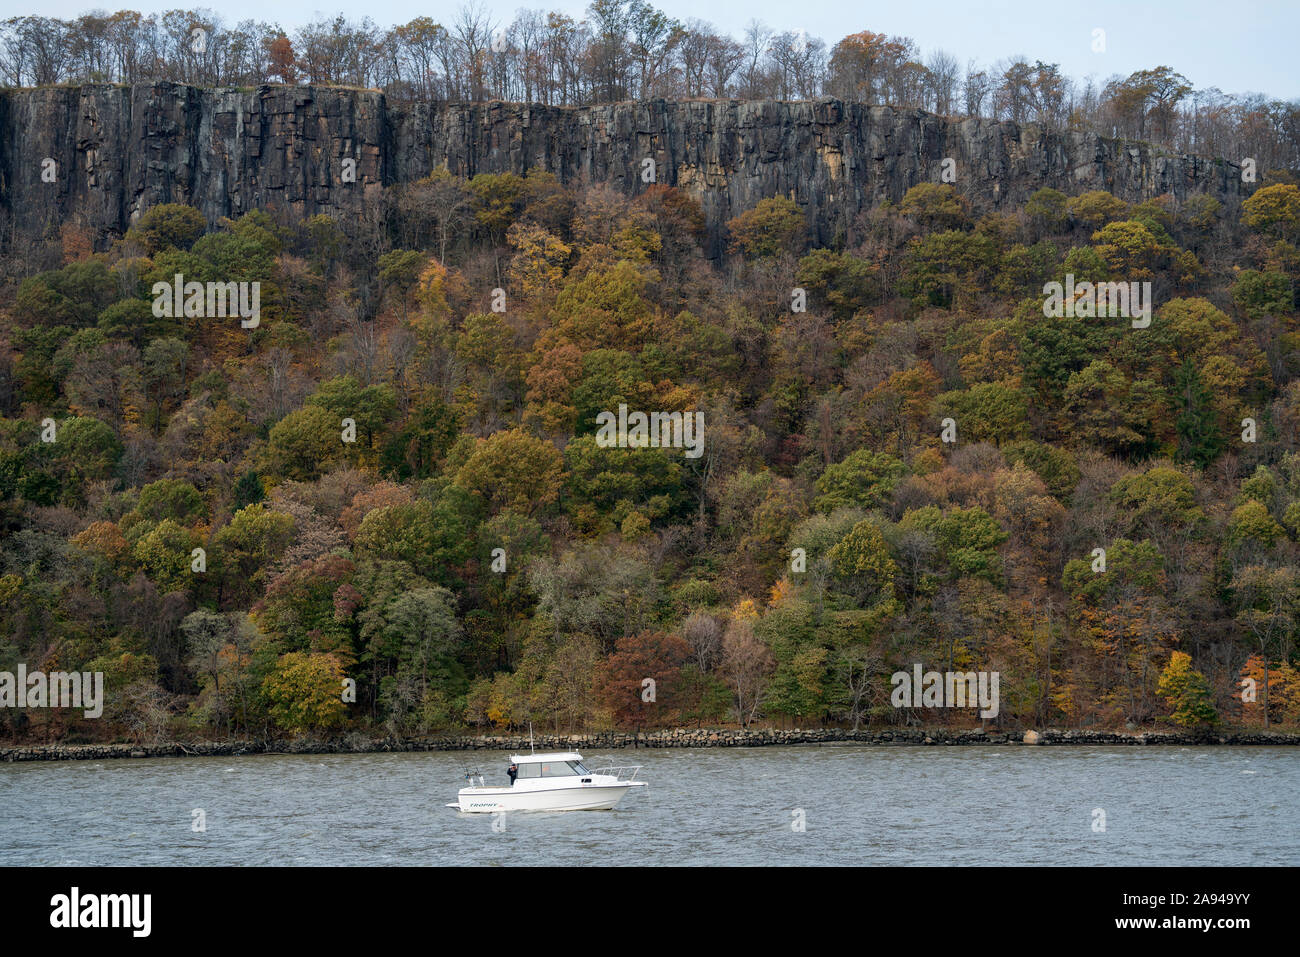 Une croisière sur la rivière Hudson, qui divise New York, du New Jersey, a adopté les 200 millions d'années des palissades bordé d'arbres en automne les couleurs. Banque D'Images